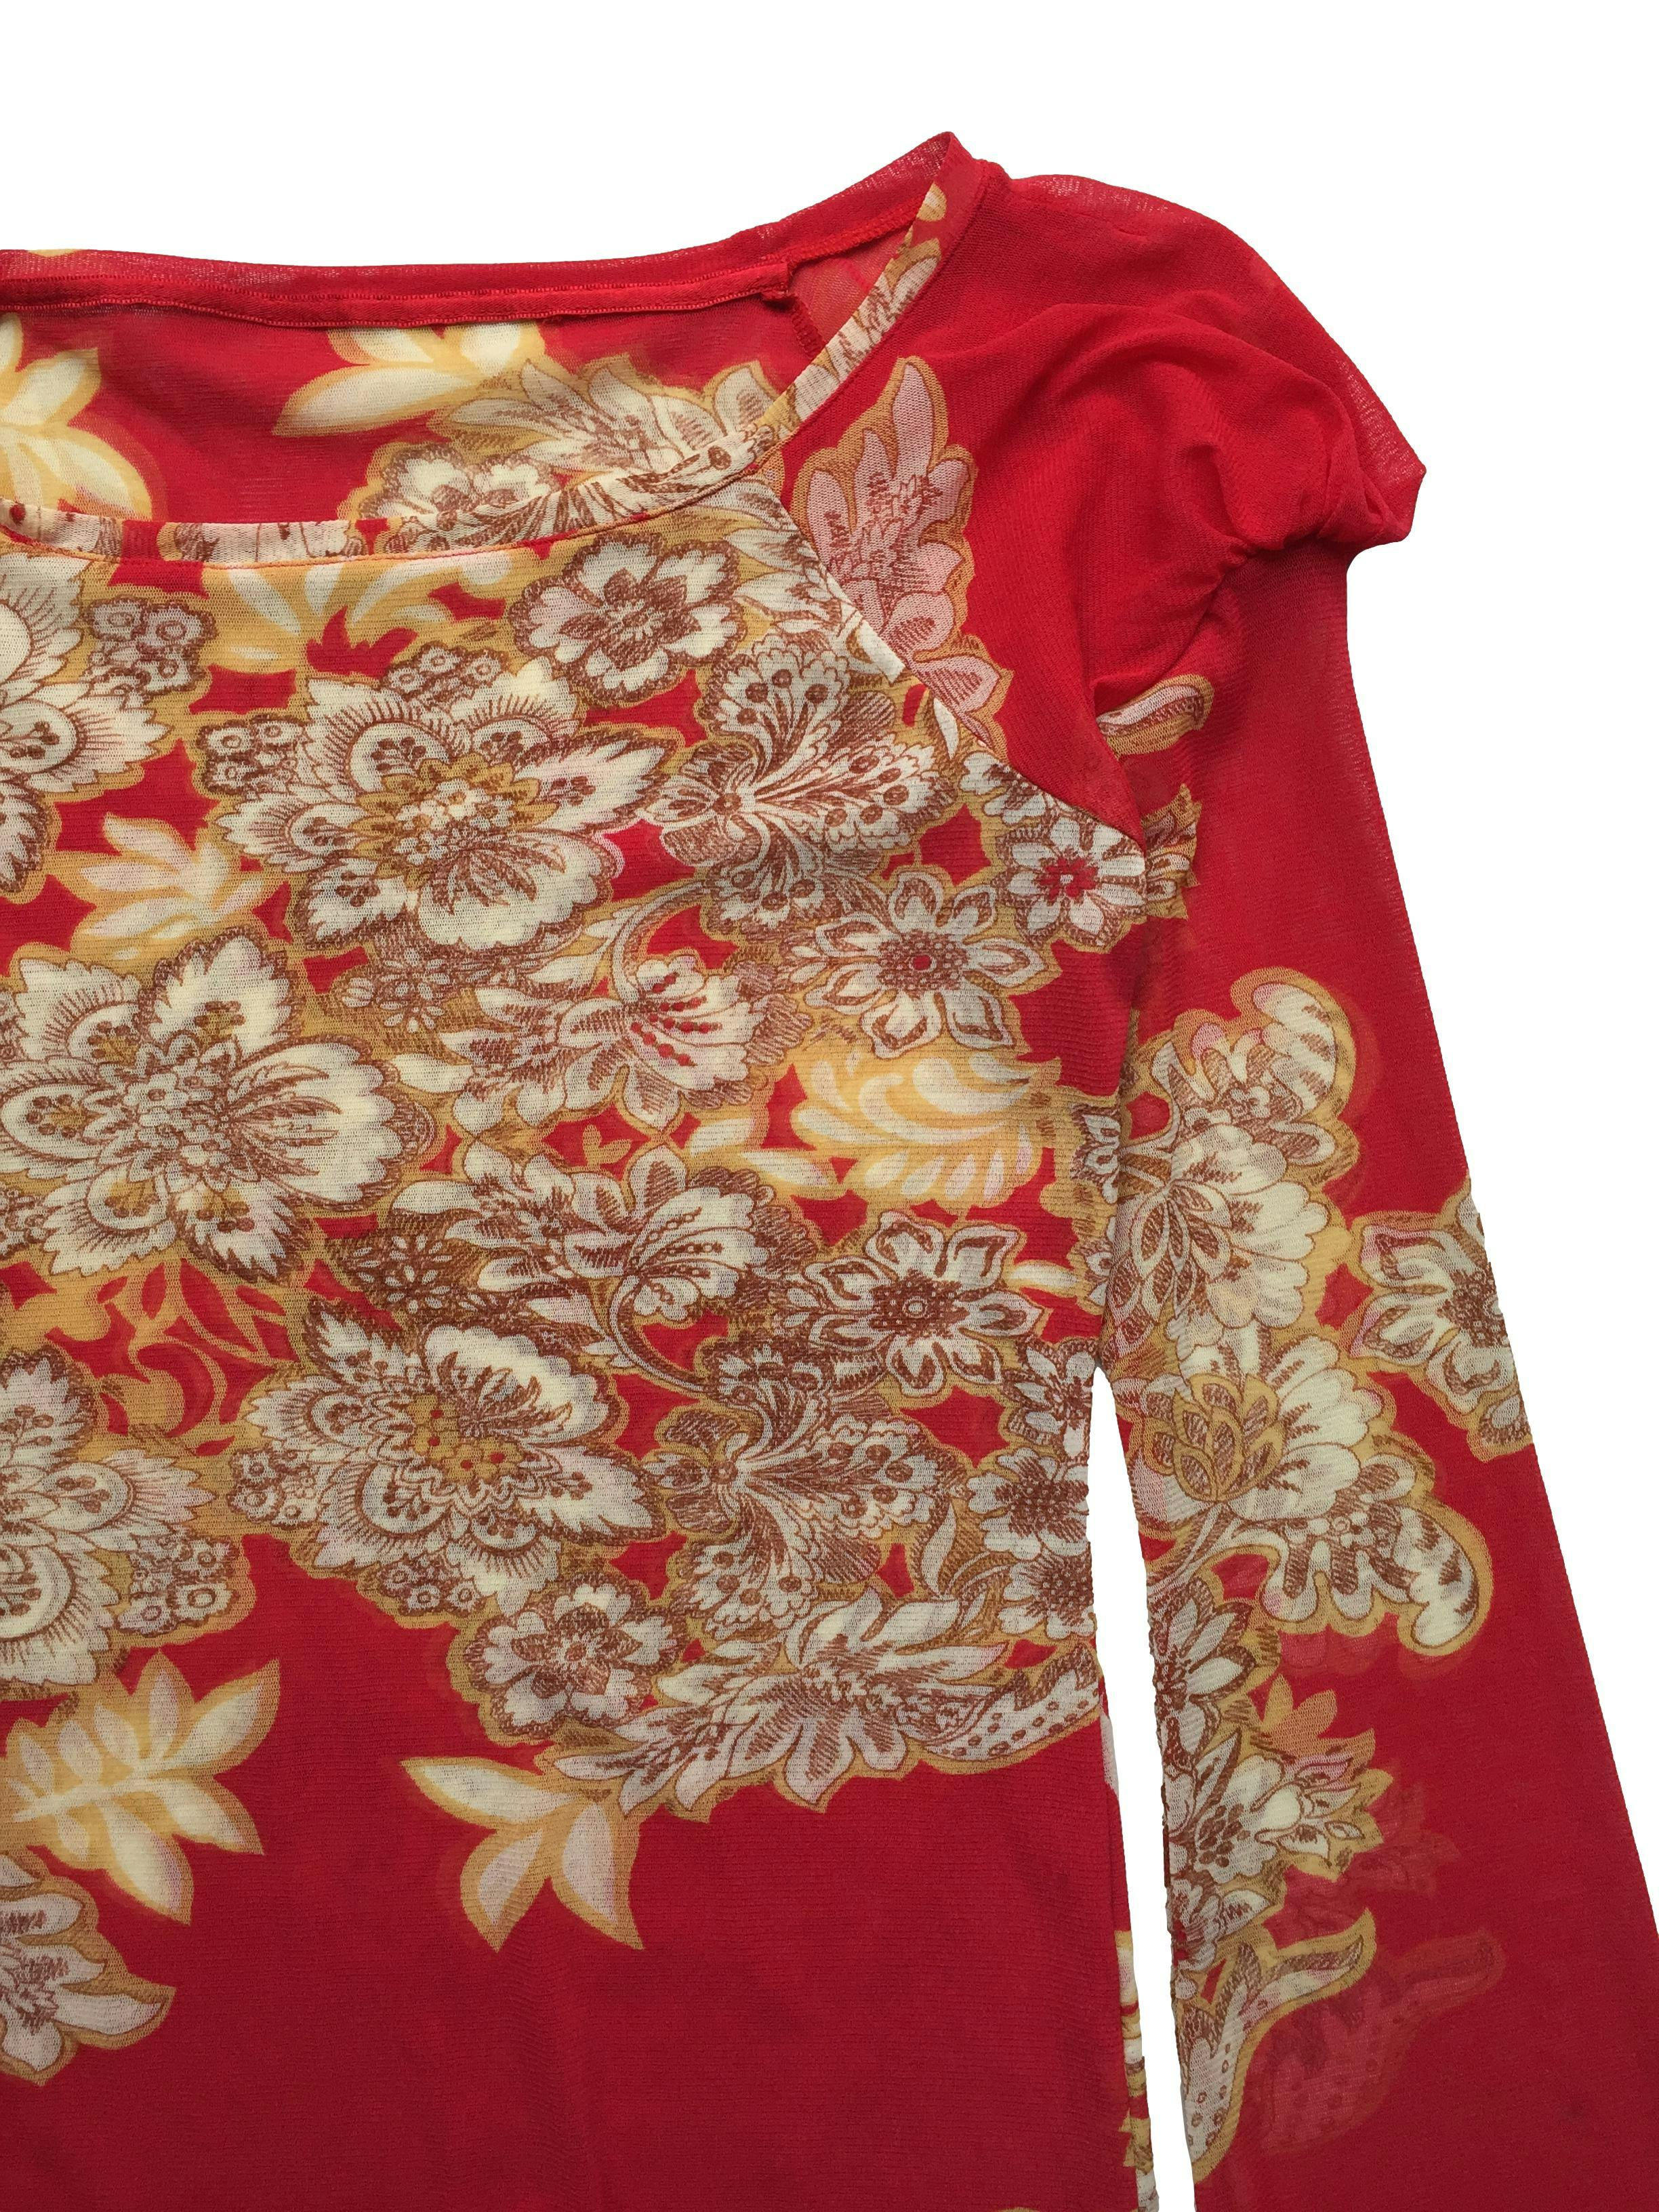 Blusa Michelle Belau de mesh rojo con estampado floral, cuello bote, fruncido en hombros y acabado lechuga. Busto 90cm, Largo 60cm.